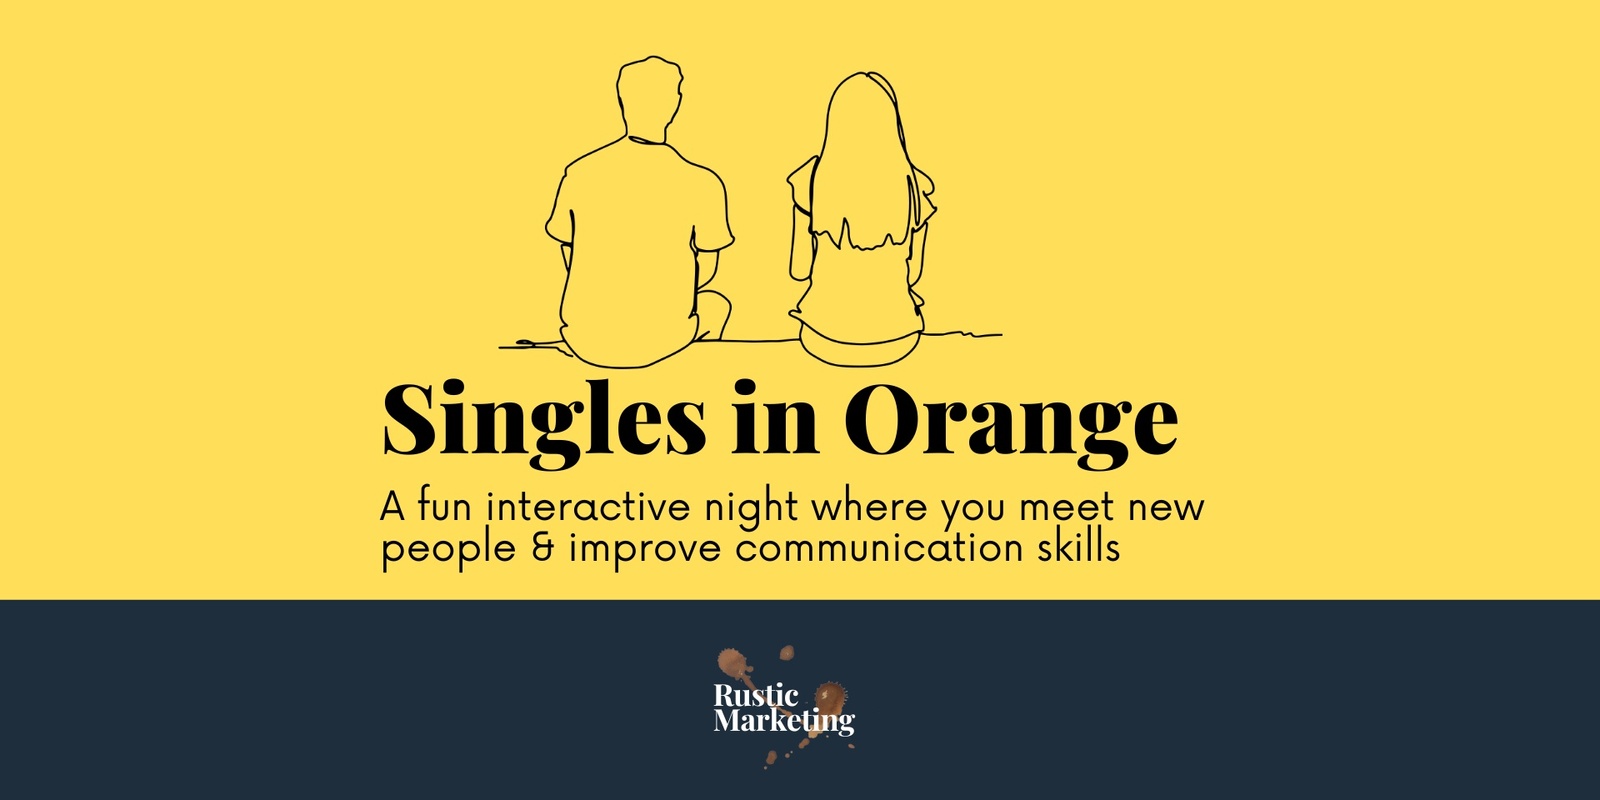 Singles in Orange's banner